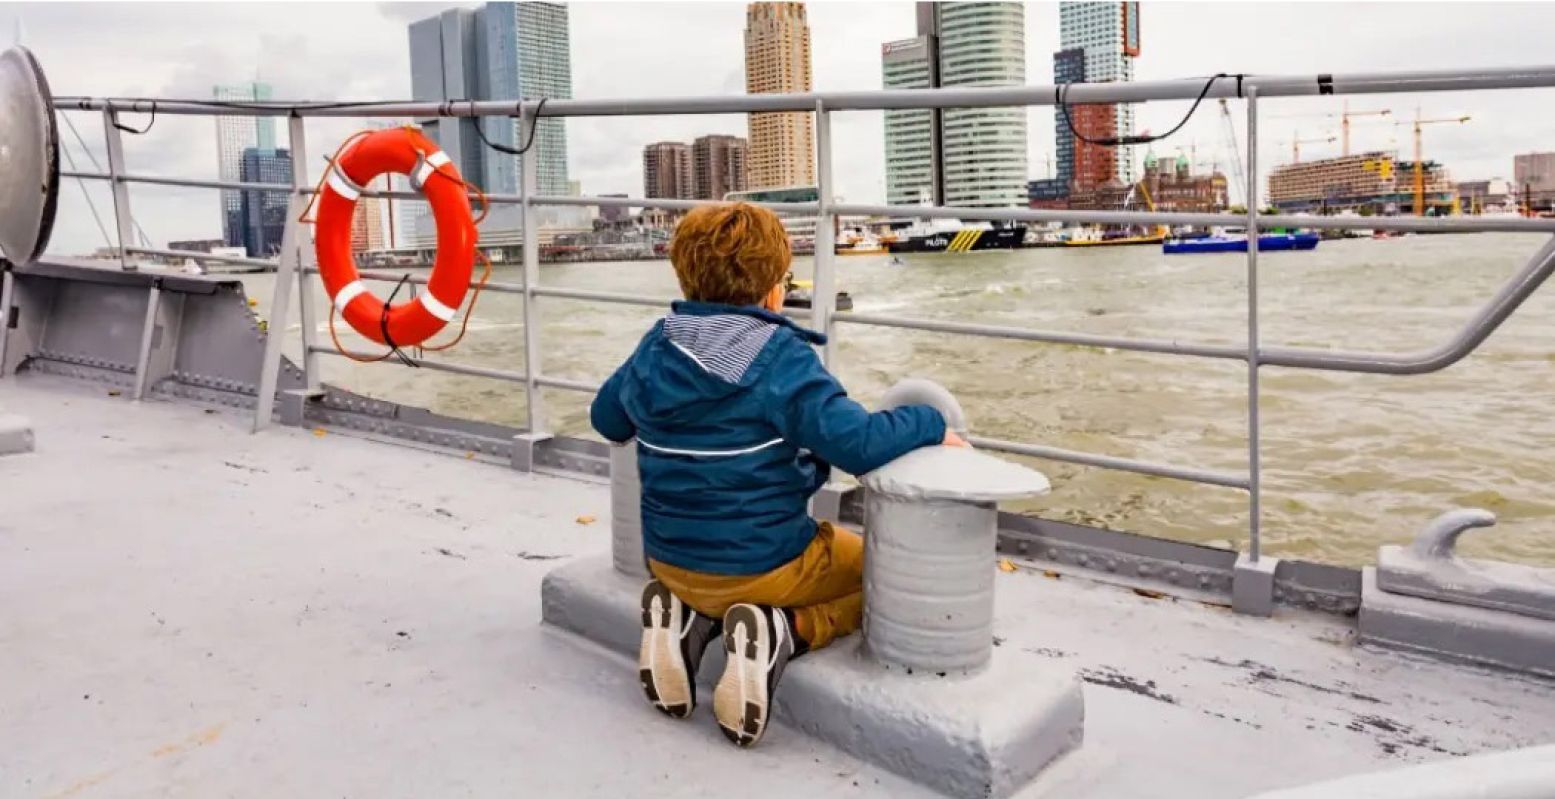 Bezoek de Wereldhavendagen en ga op reis door de grootste haven van Europa, ons eigen Rotterdam. Foto: Wereldhavendagen © Anne Reitsma Fotografie